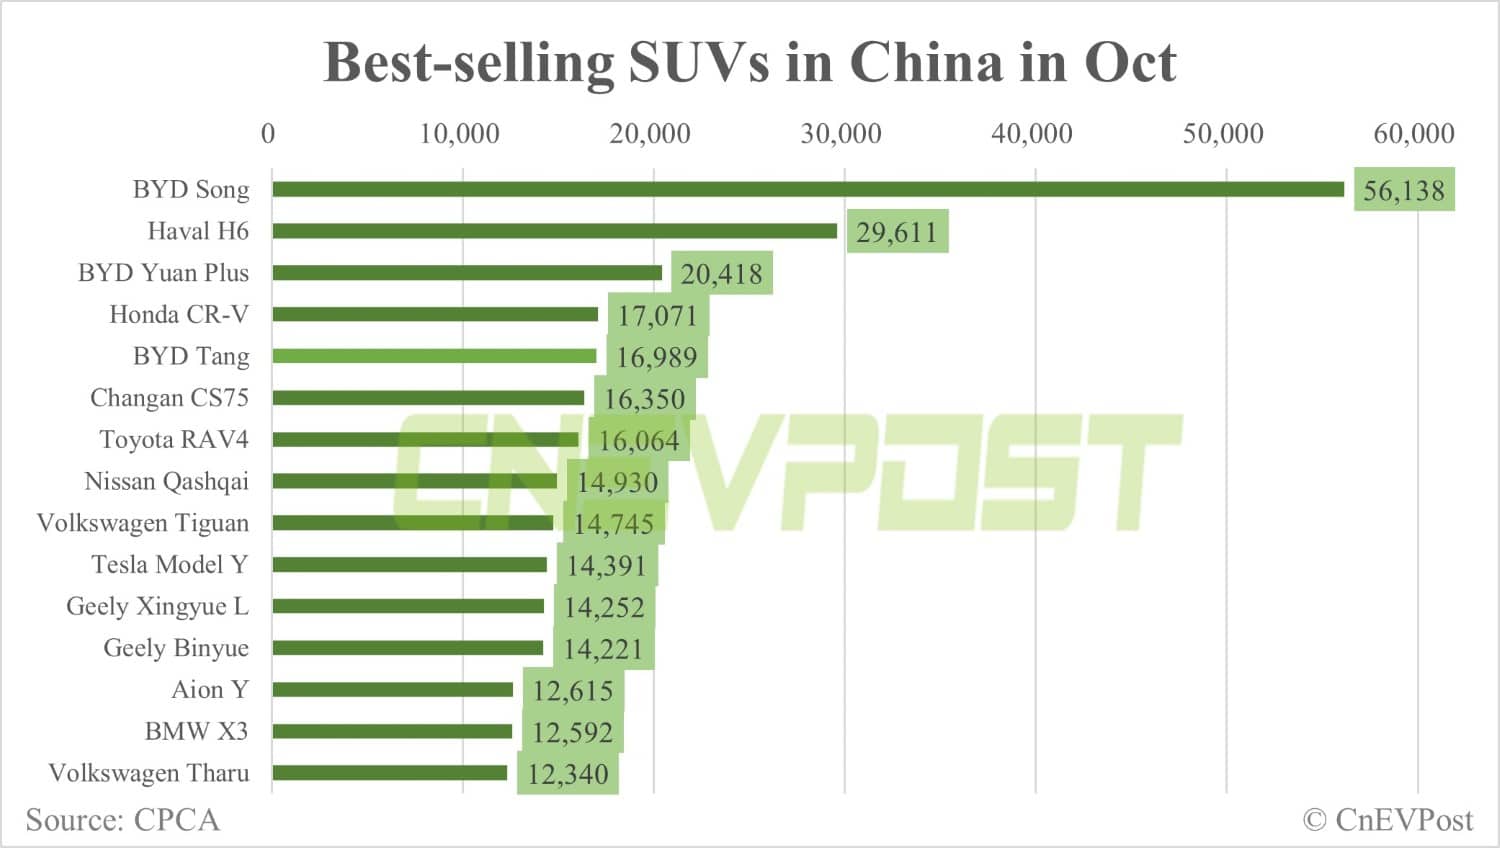 Vendas da Tesla em outubro na China: Model Y em 14.391, Model 3 em 2.809-CnEVPost